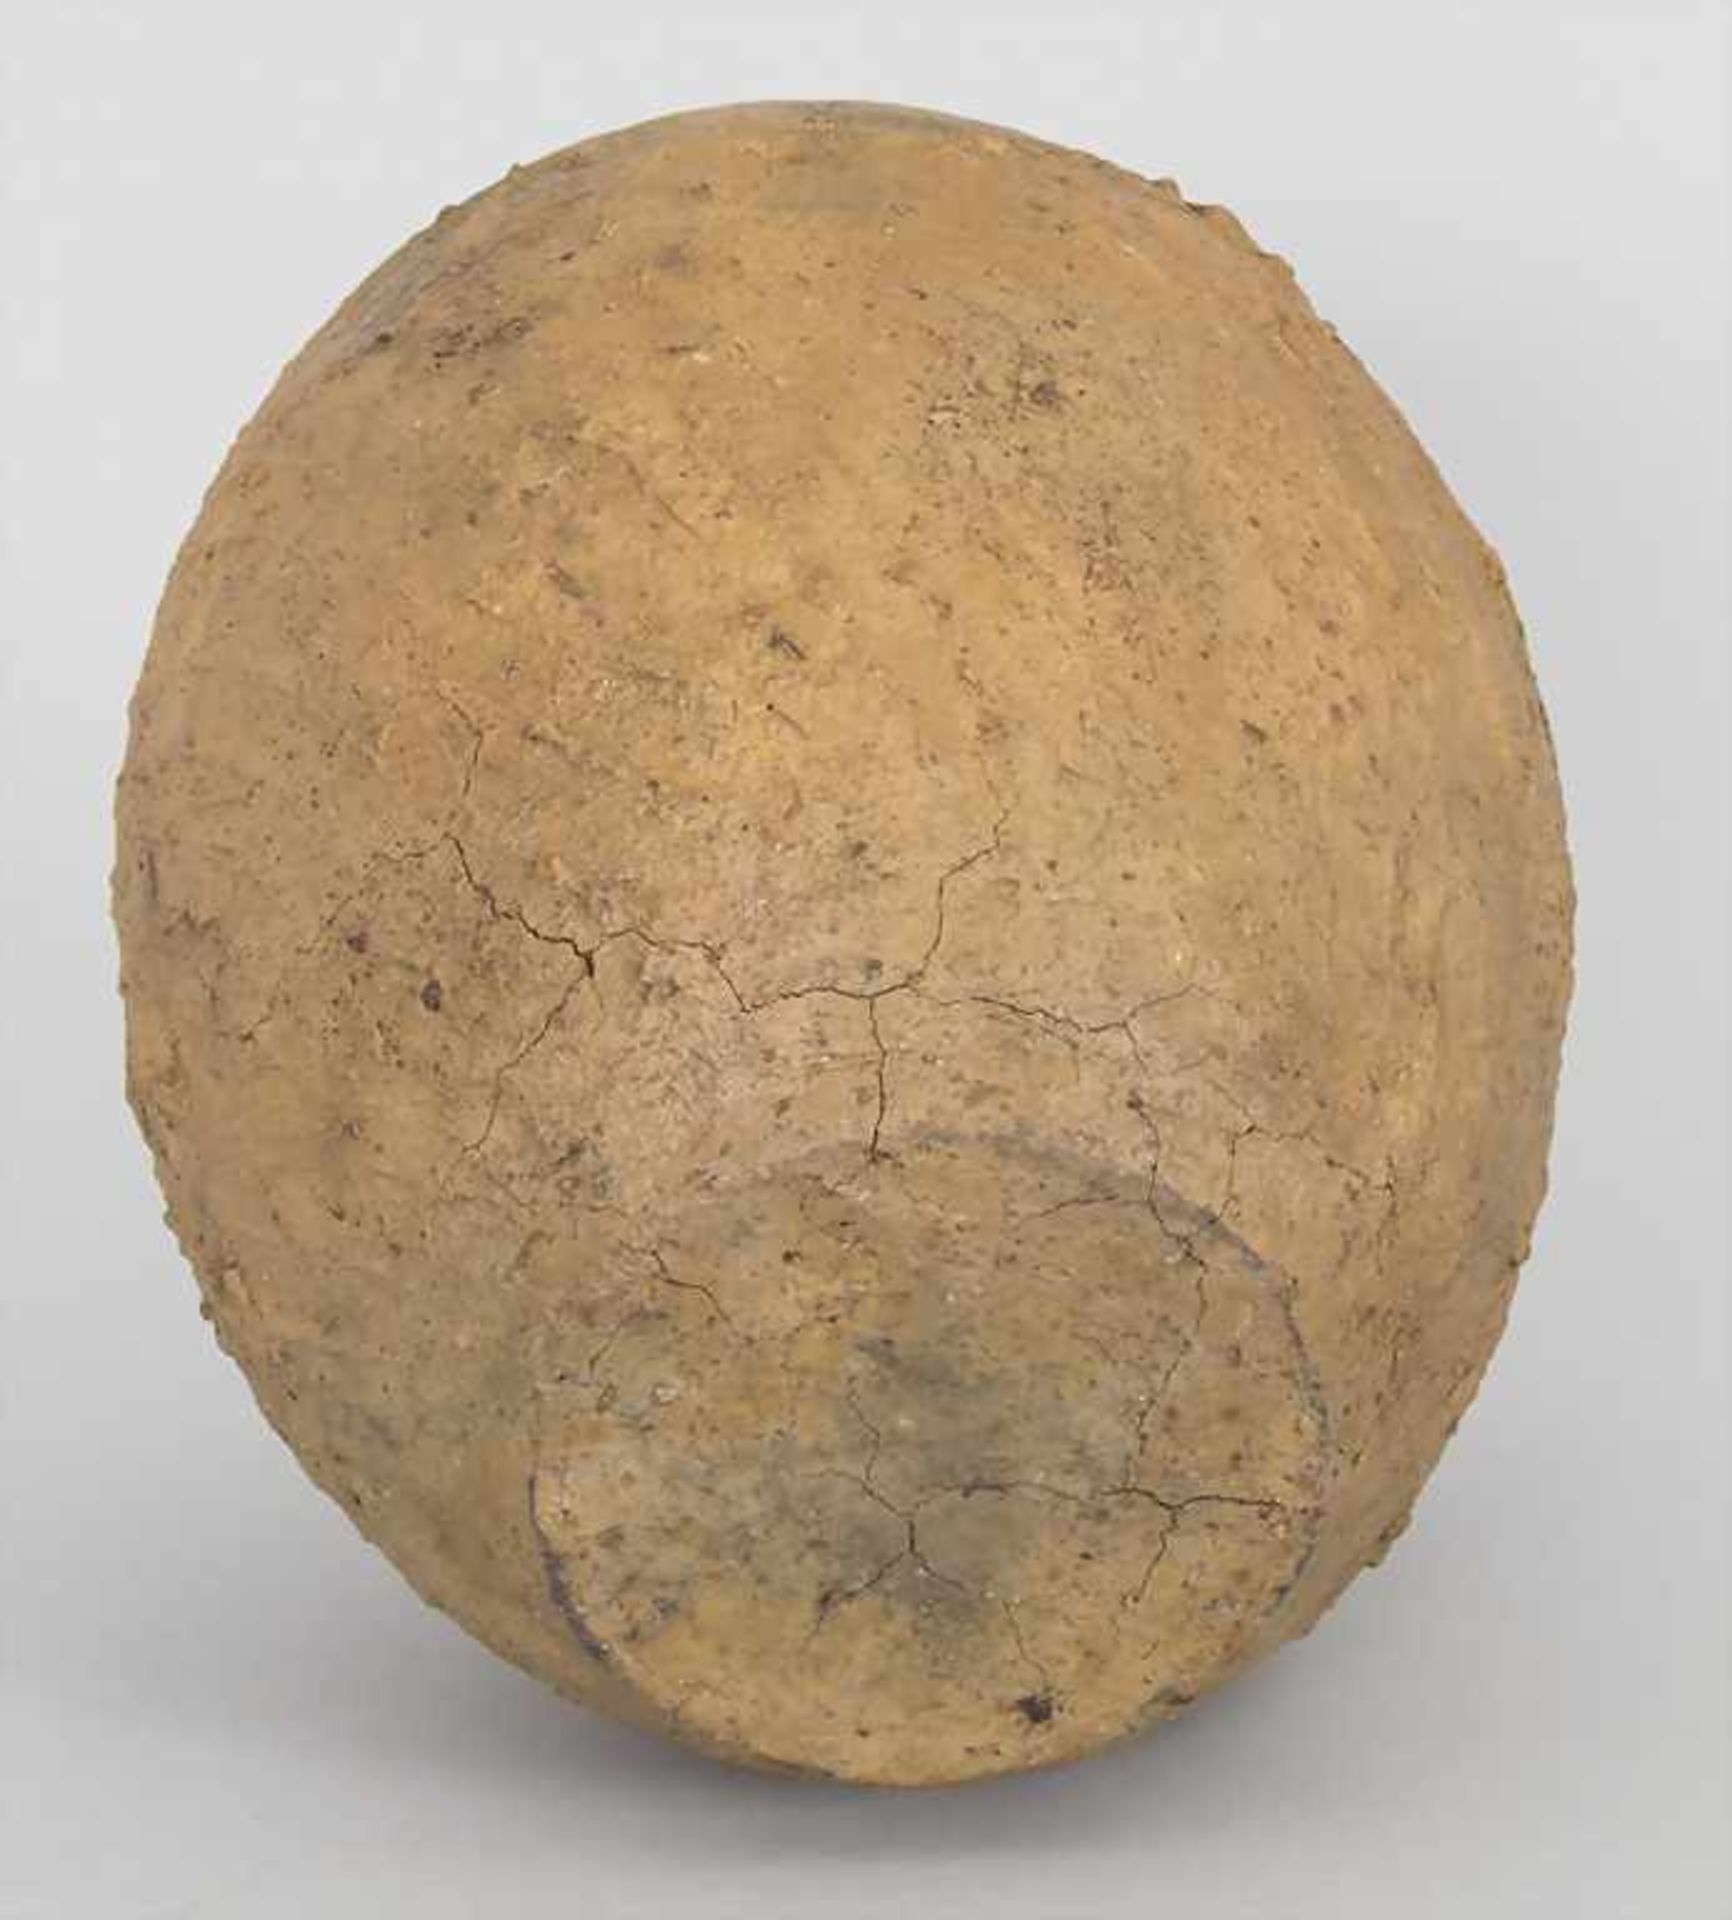 Bronzezeitliches Keramik-Gefäß / A Bronze Age ceramic vessel, Lausitzer Kultur, 9. - 6. Jh. v. Chr. - Bild 5 aus 6